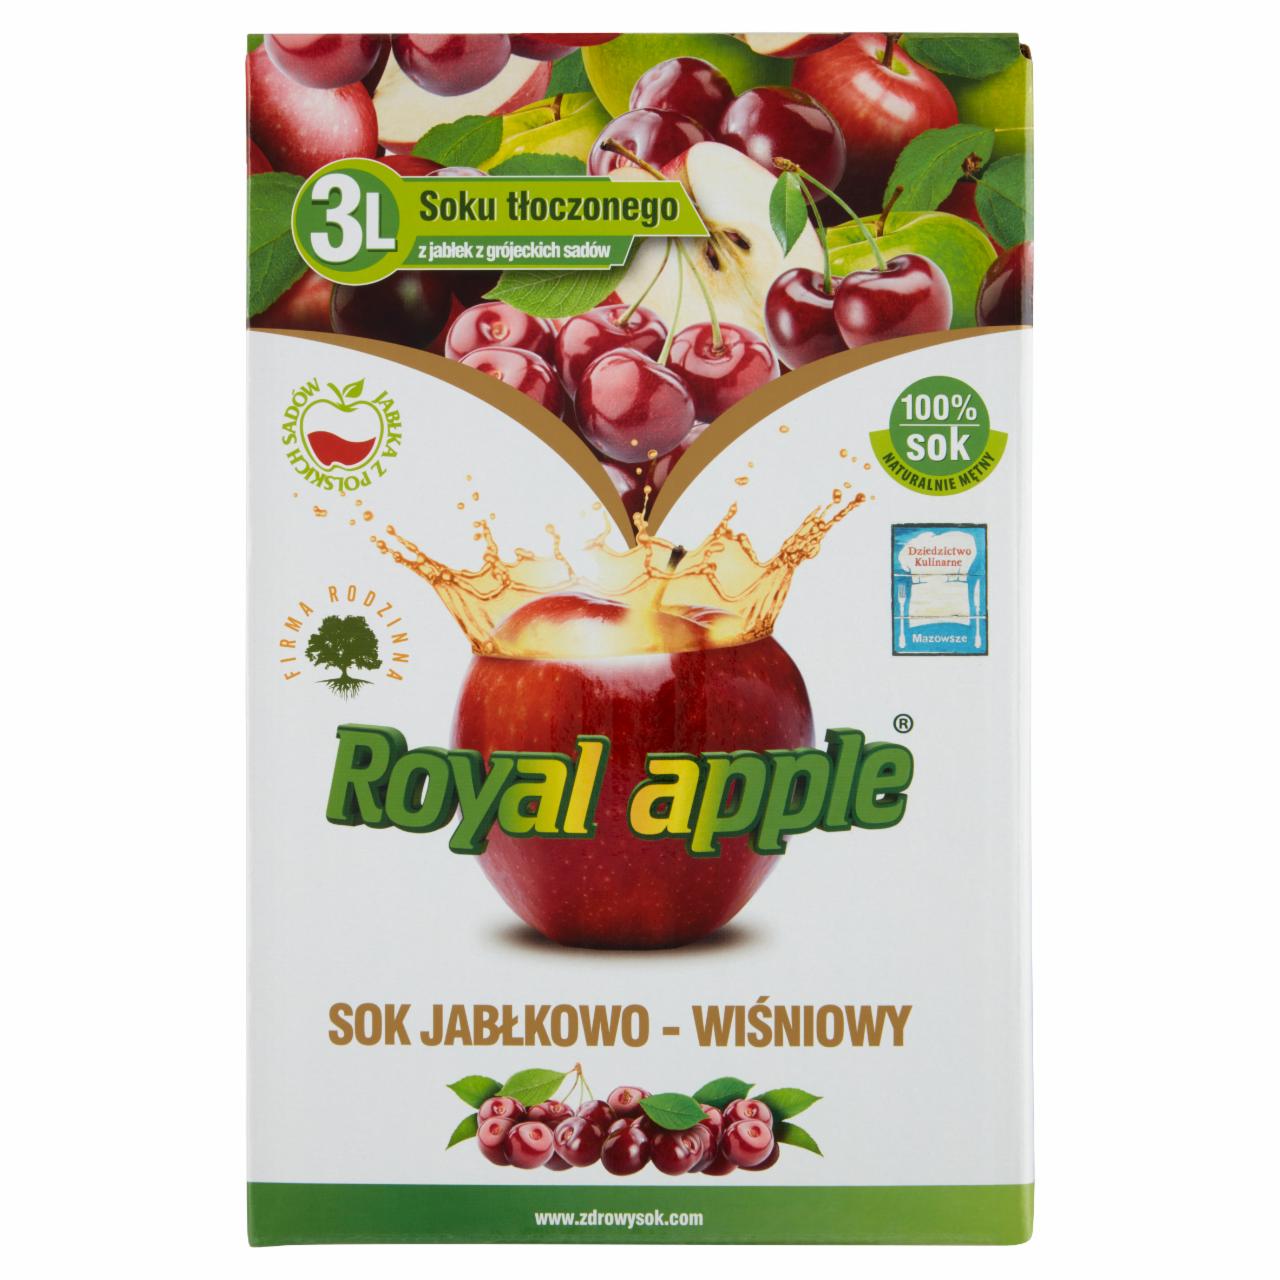 Zdjęcia - Royal apple Sok jabłkowo-wiśniowy 3 l